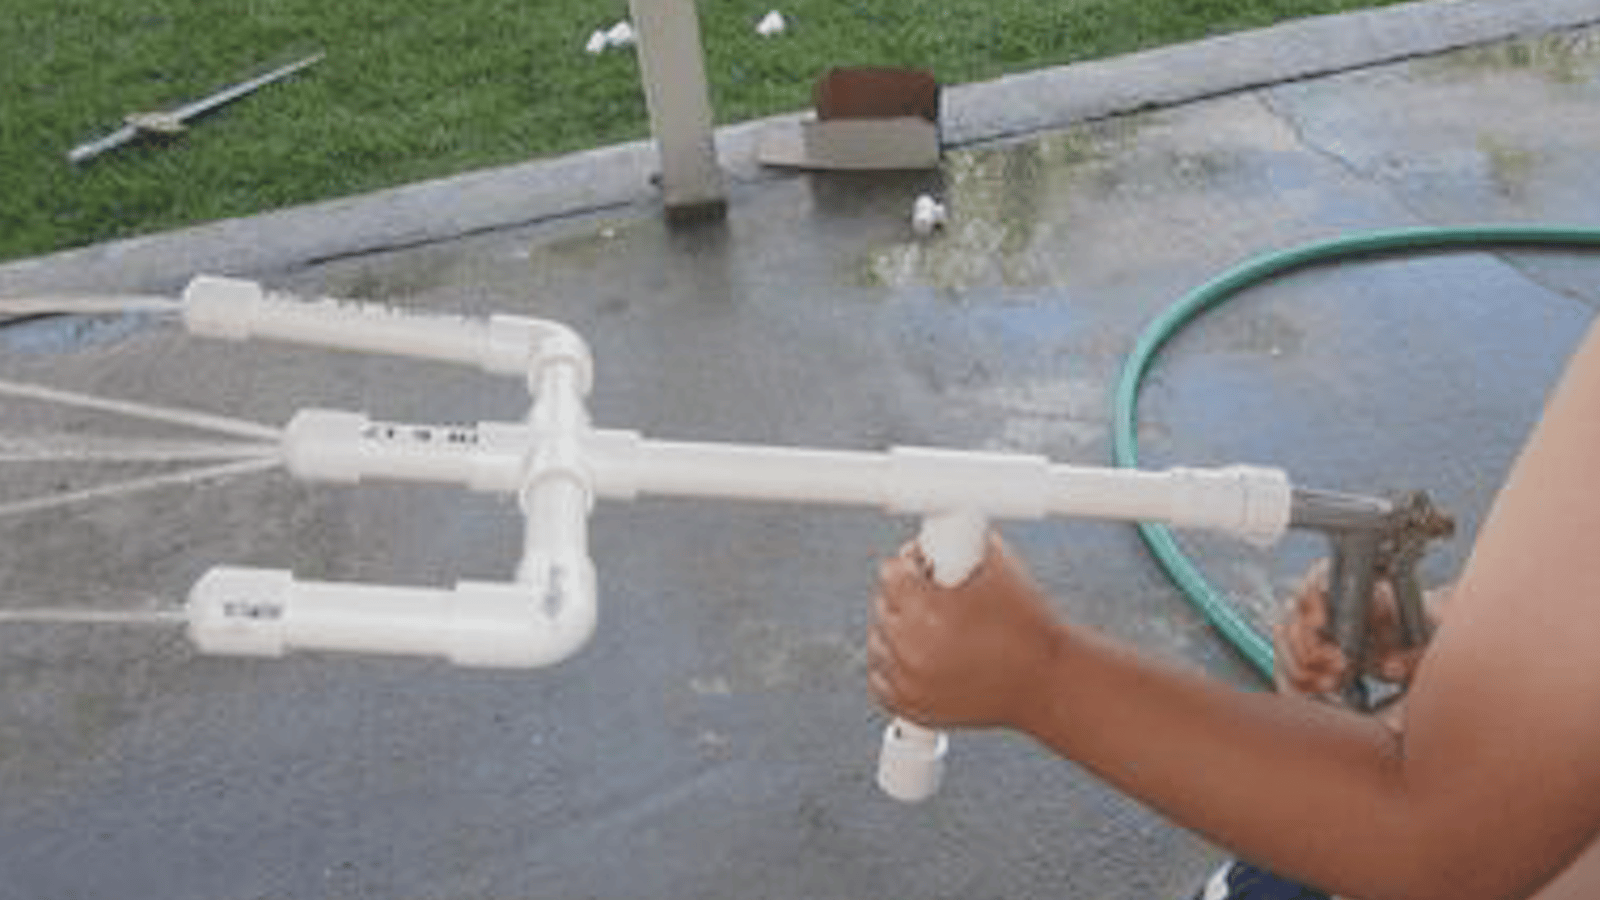 Comment faire un super pistolet à eau avec des tuyaux